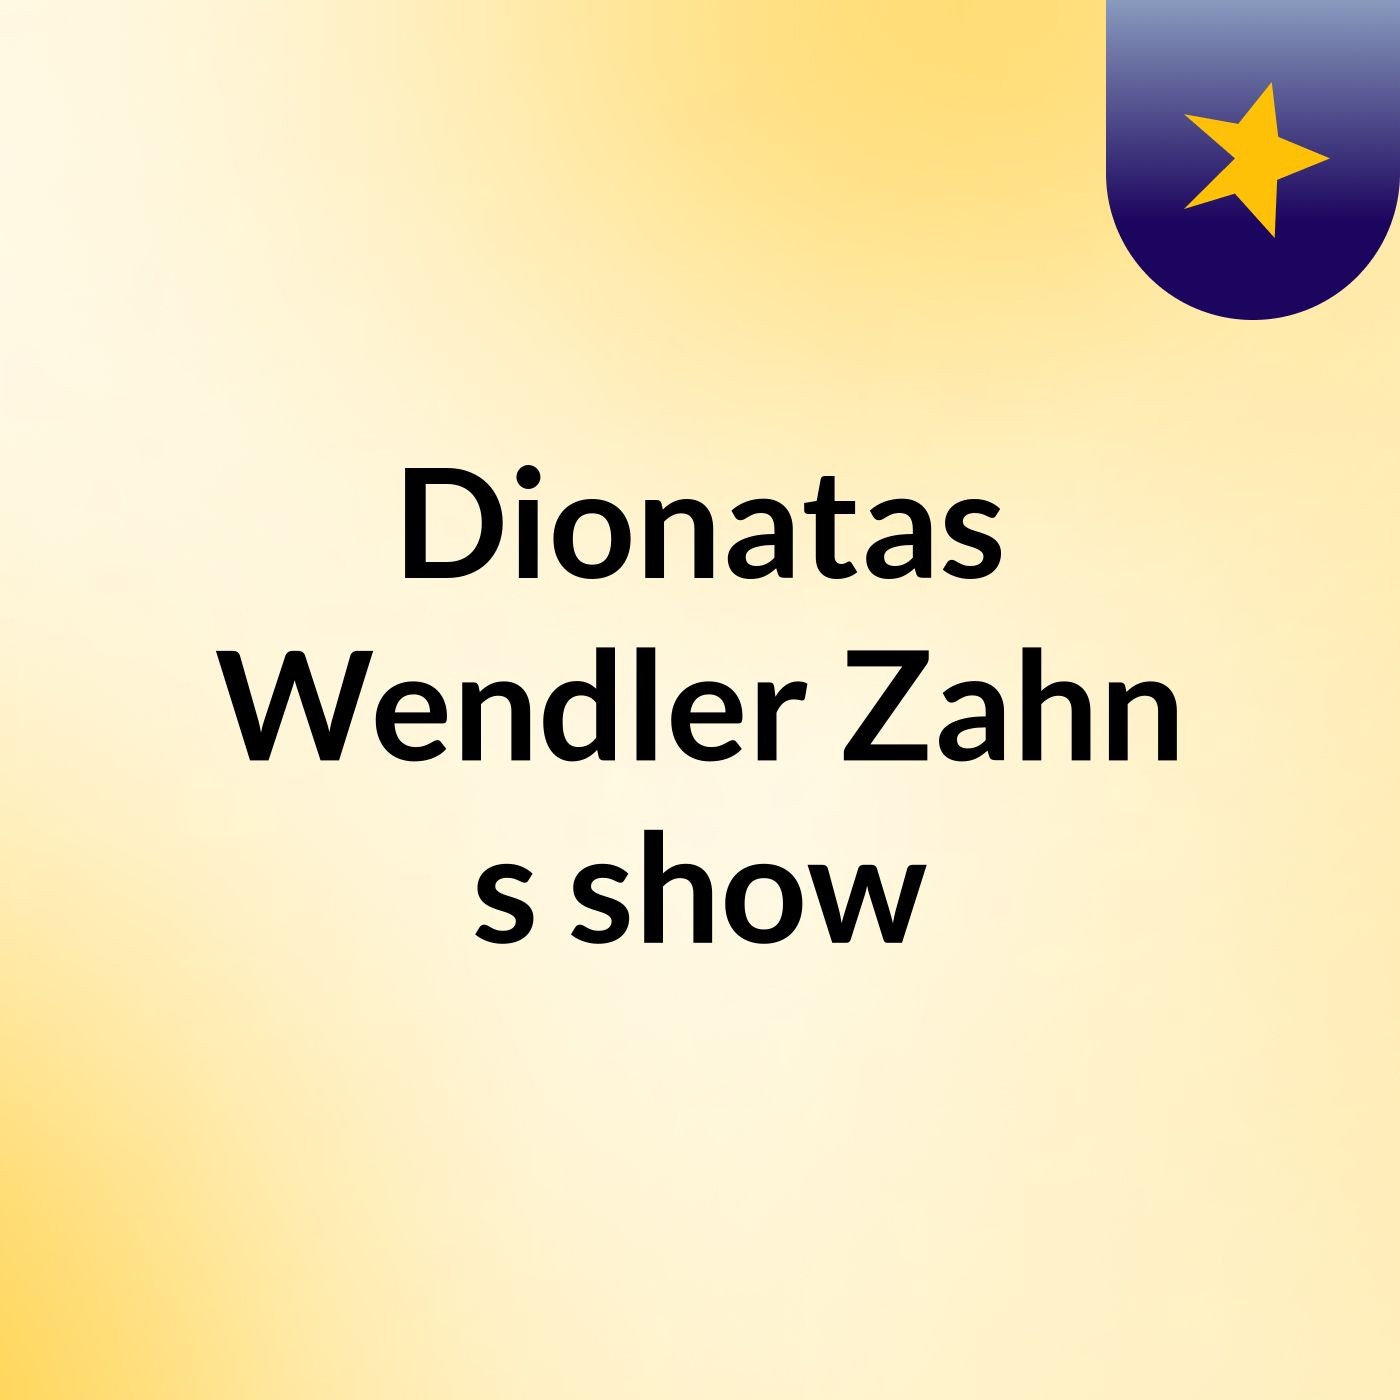 Dionatas Wendler Zahn's show